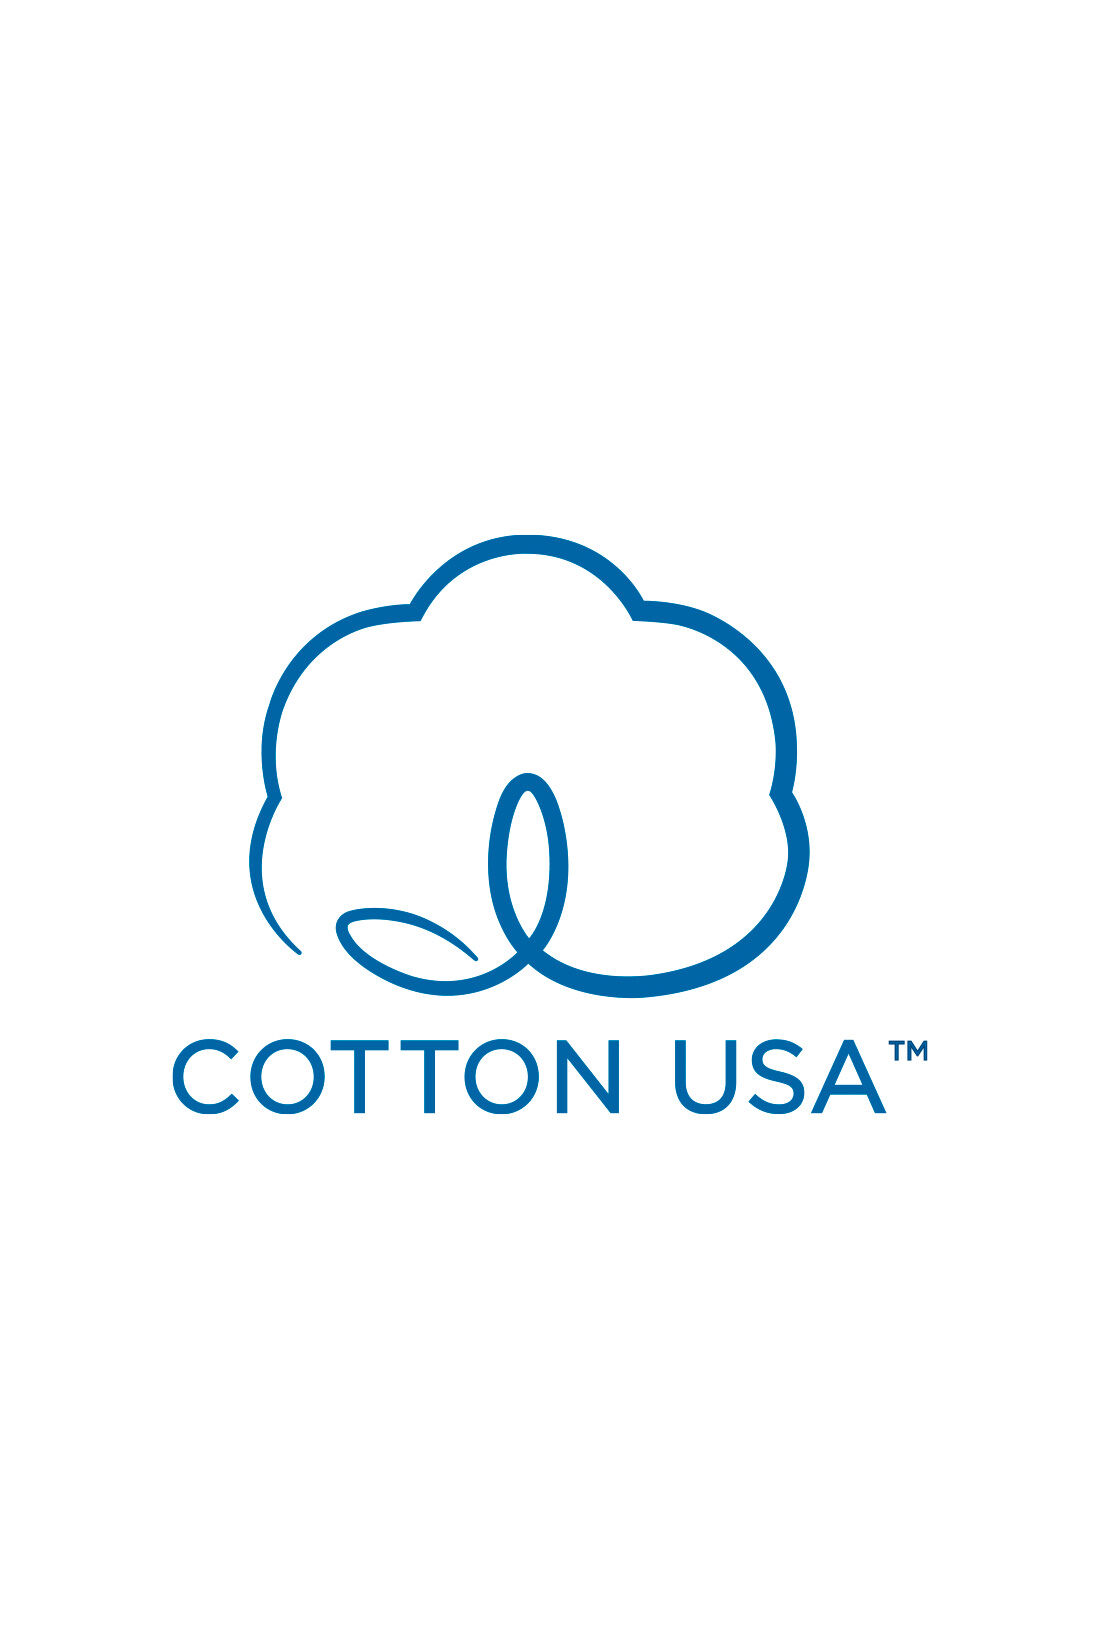 MEDE19F|MEDE19F　USAコットン　グラフ誌LIFEフォトプリントTシャツ〈ブラック〉|【USAコットン】アメリカ綿を使用した優秀な品質の商品にのみ使用を認められた、COTTON USA（TM）のマーク付き。持続可能な生産を目指し、環境に配慮した農法で栽培された綿花を使用。働き手の適正賃金、安全な作業環境の徹底など生産者にもやさしいサステナブルなコットンです。